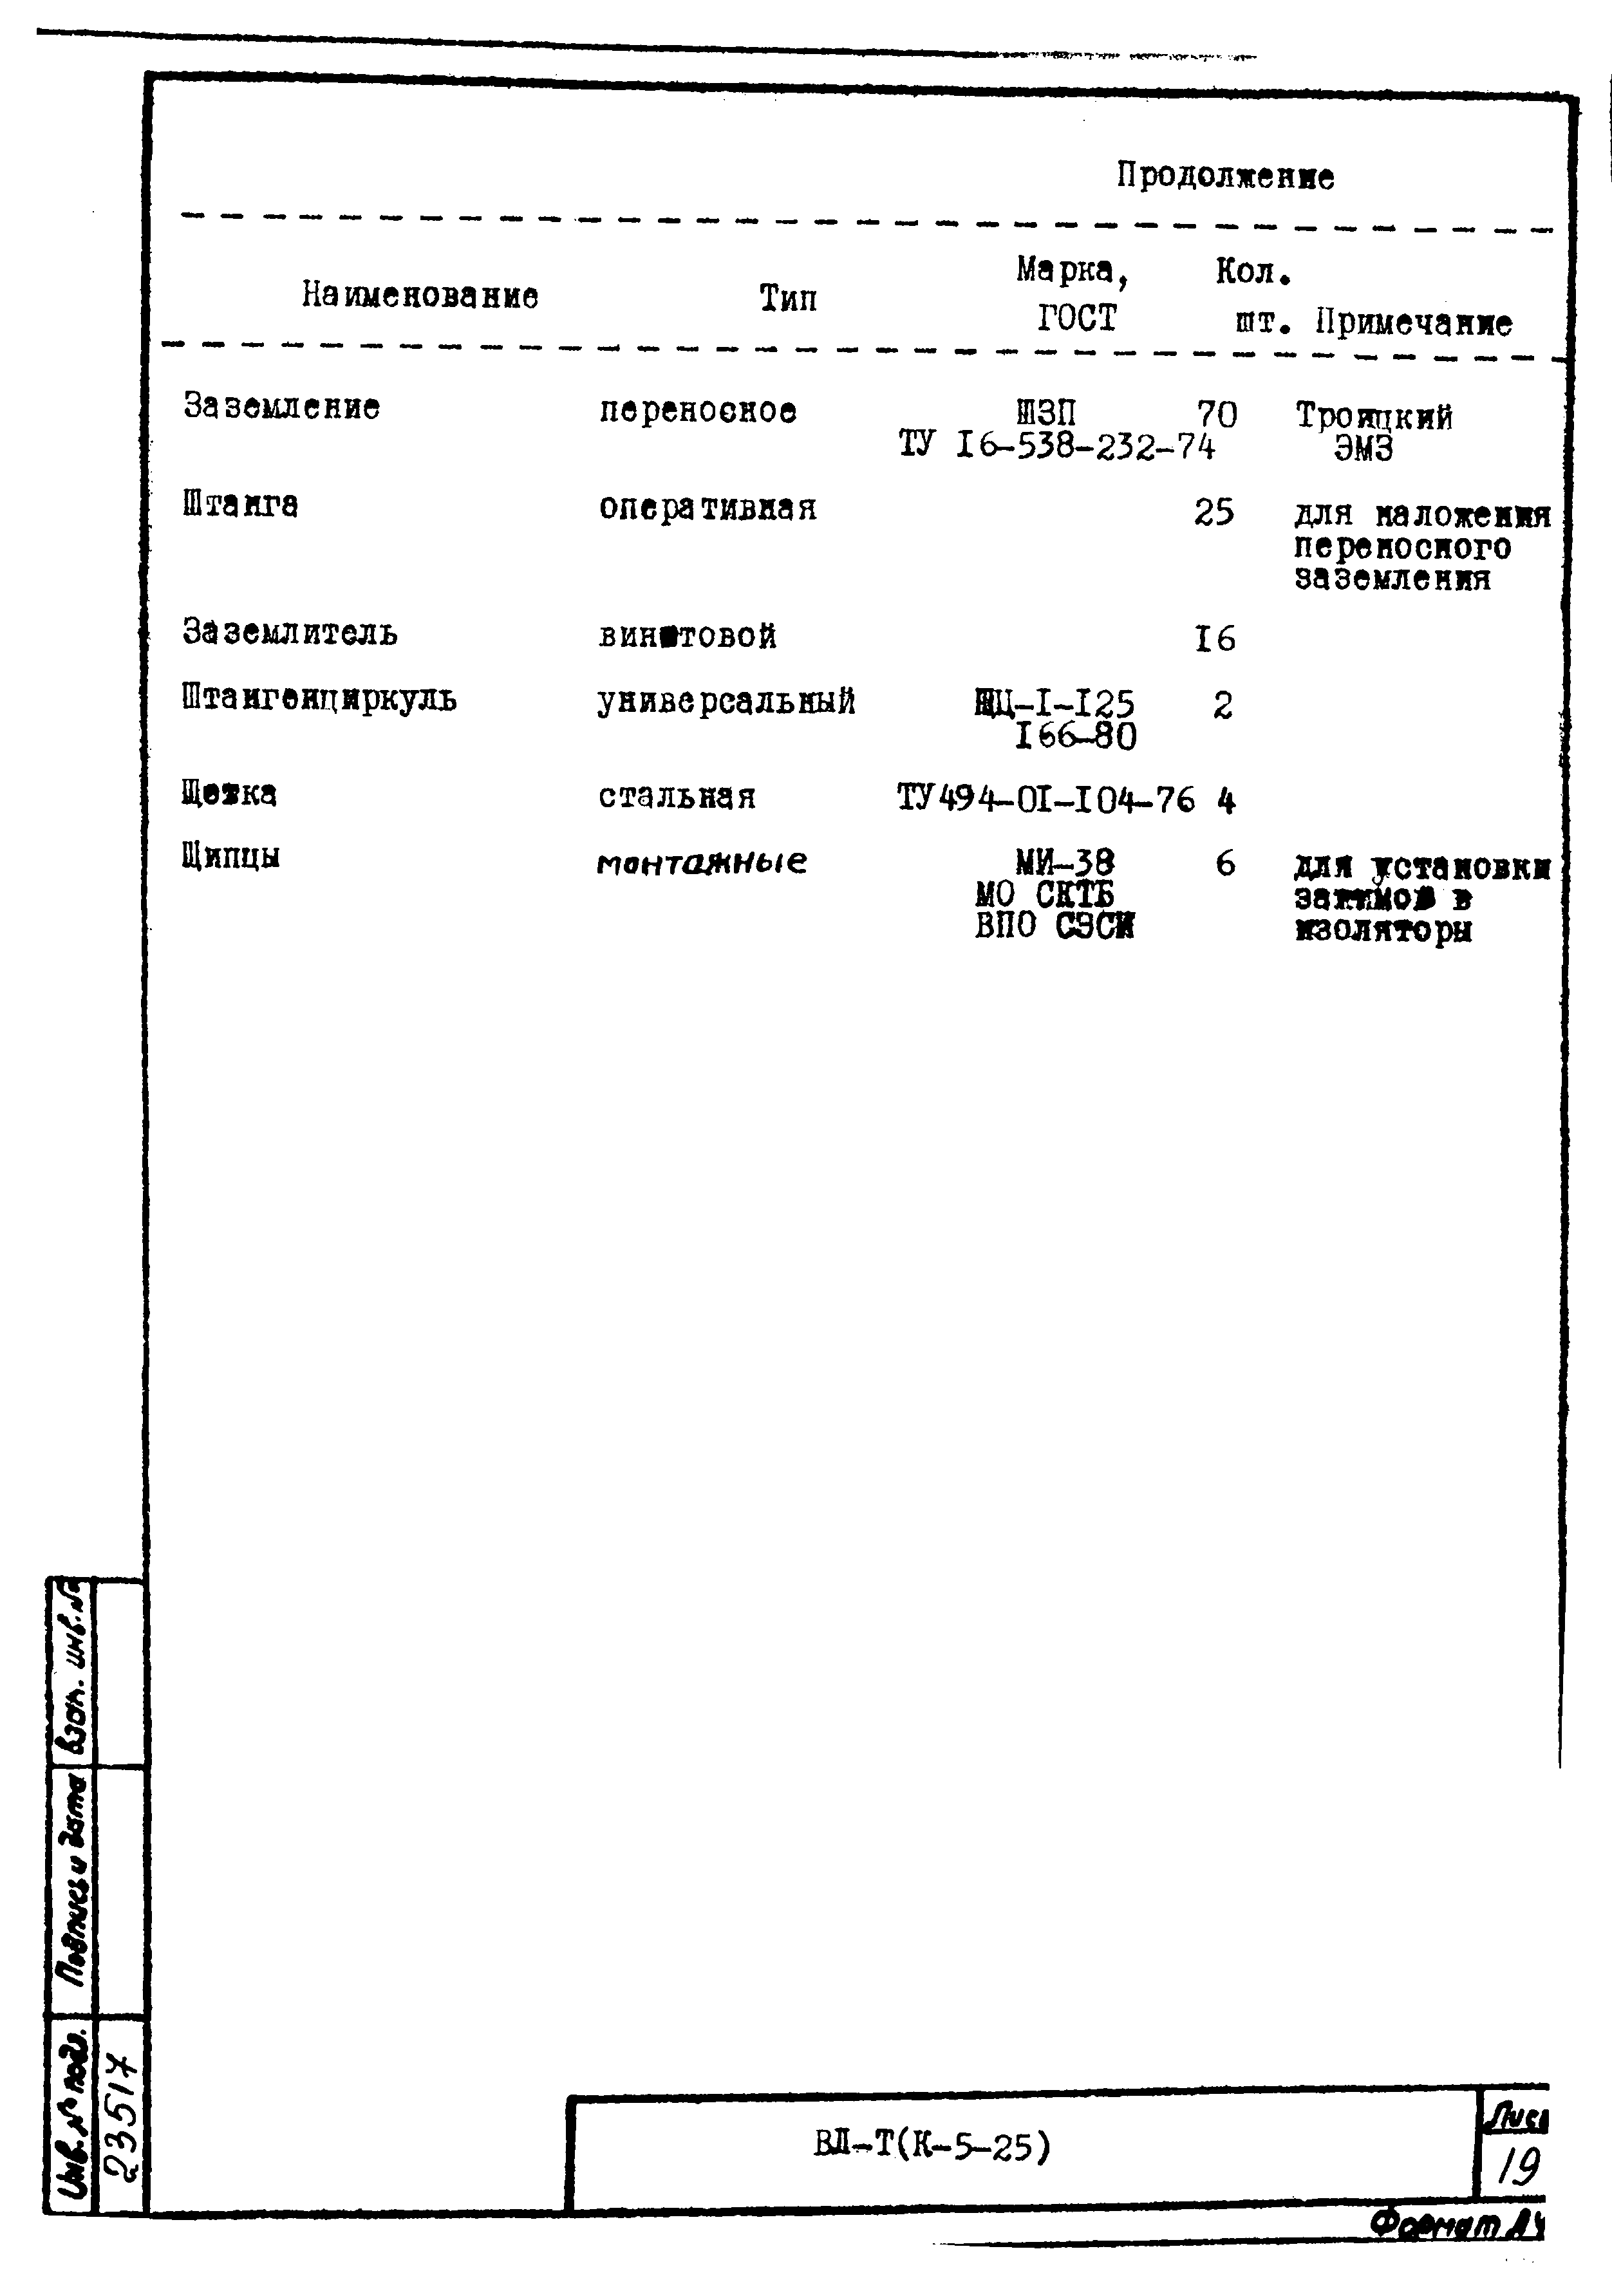 Технологическая карта К-5-25-12